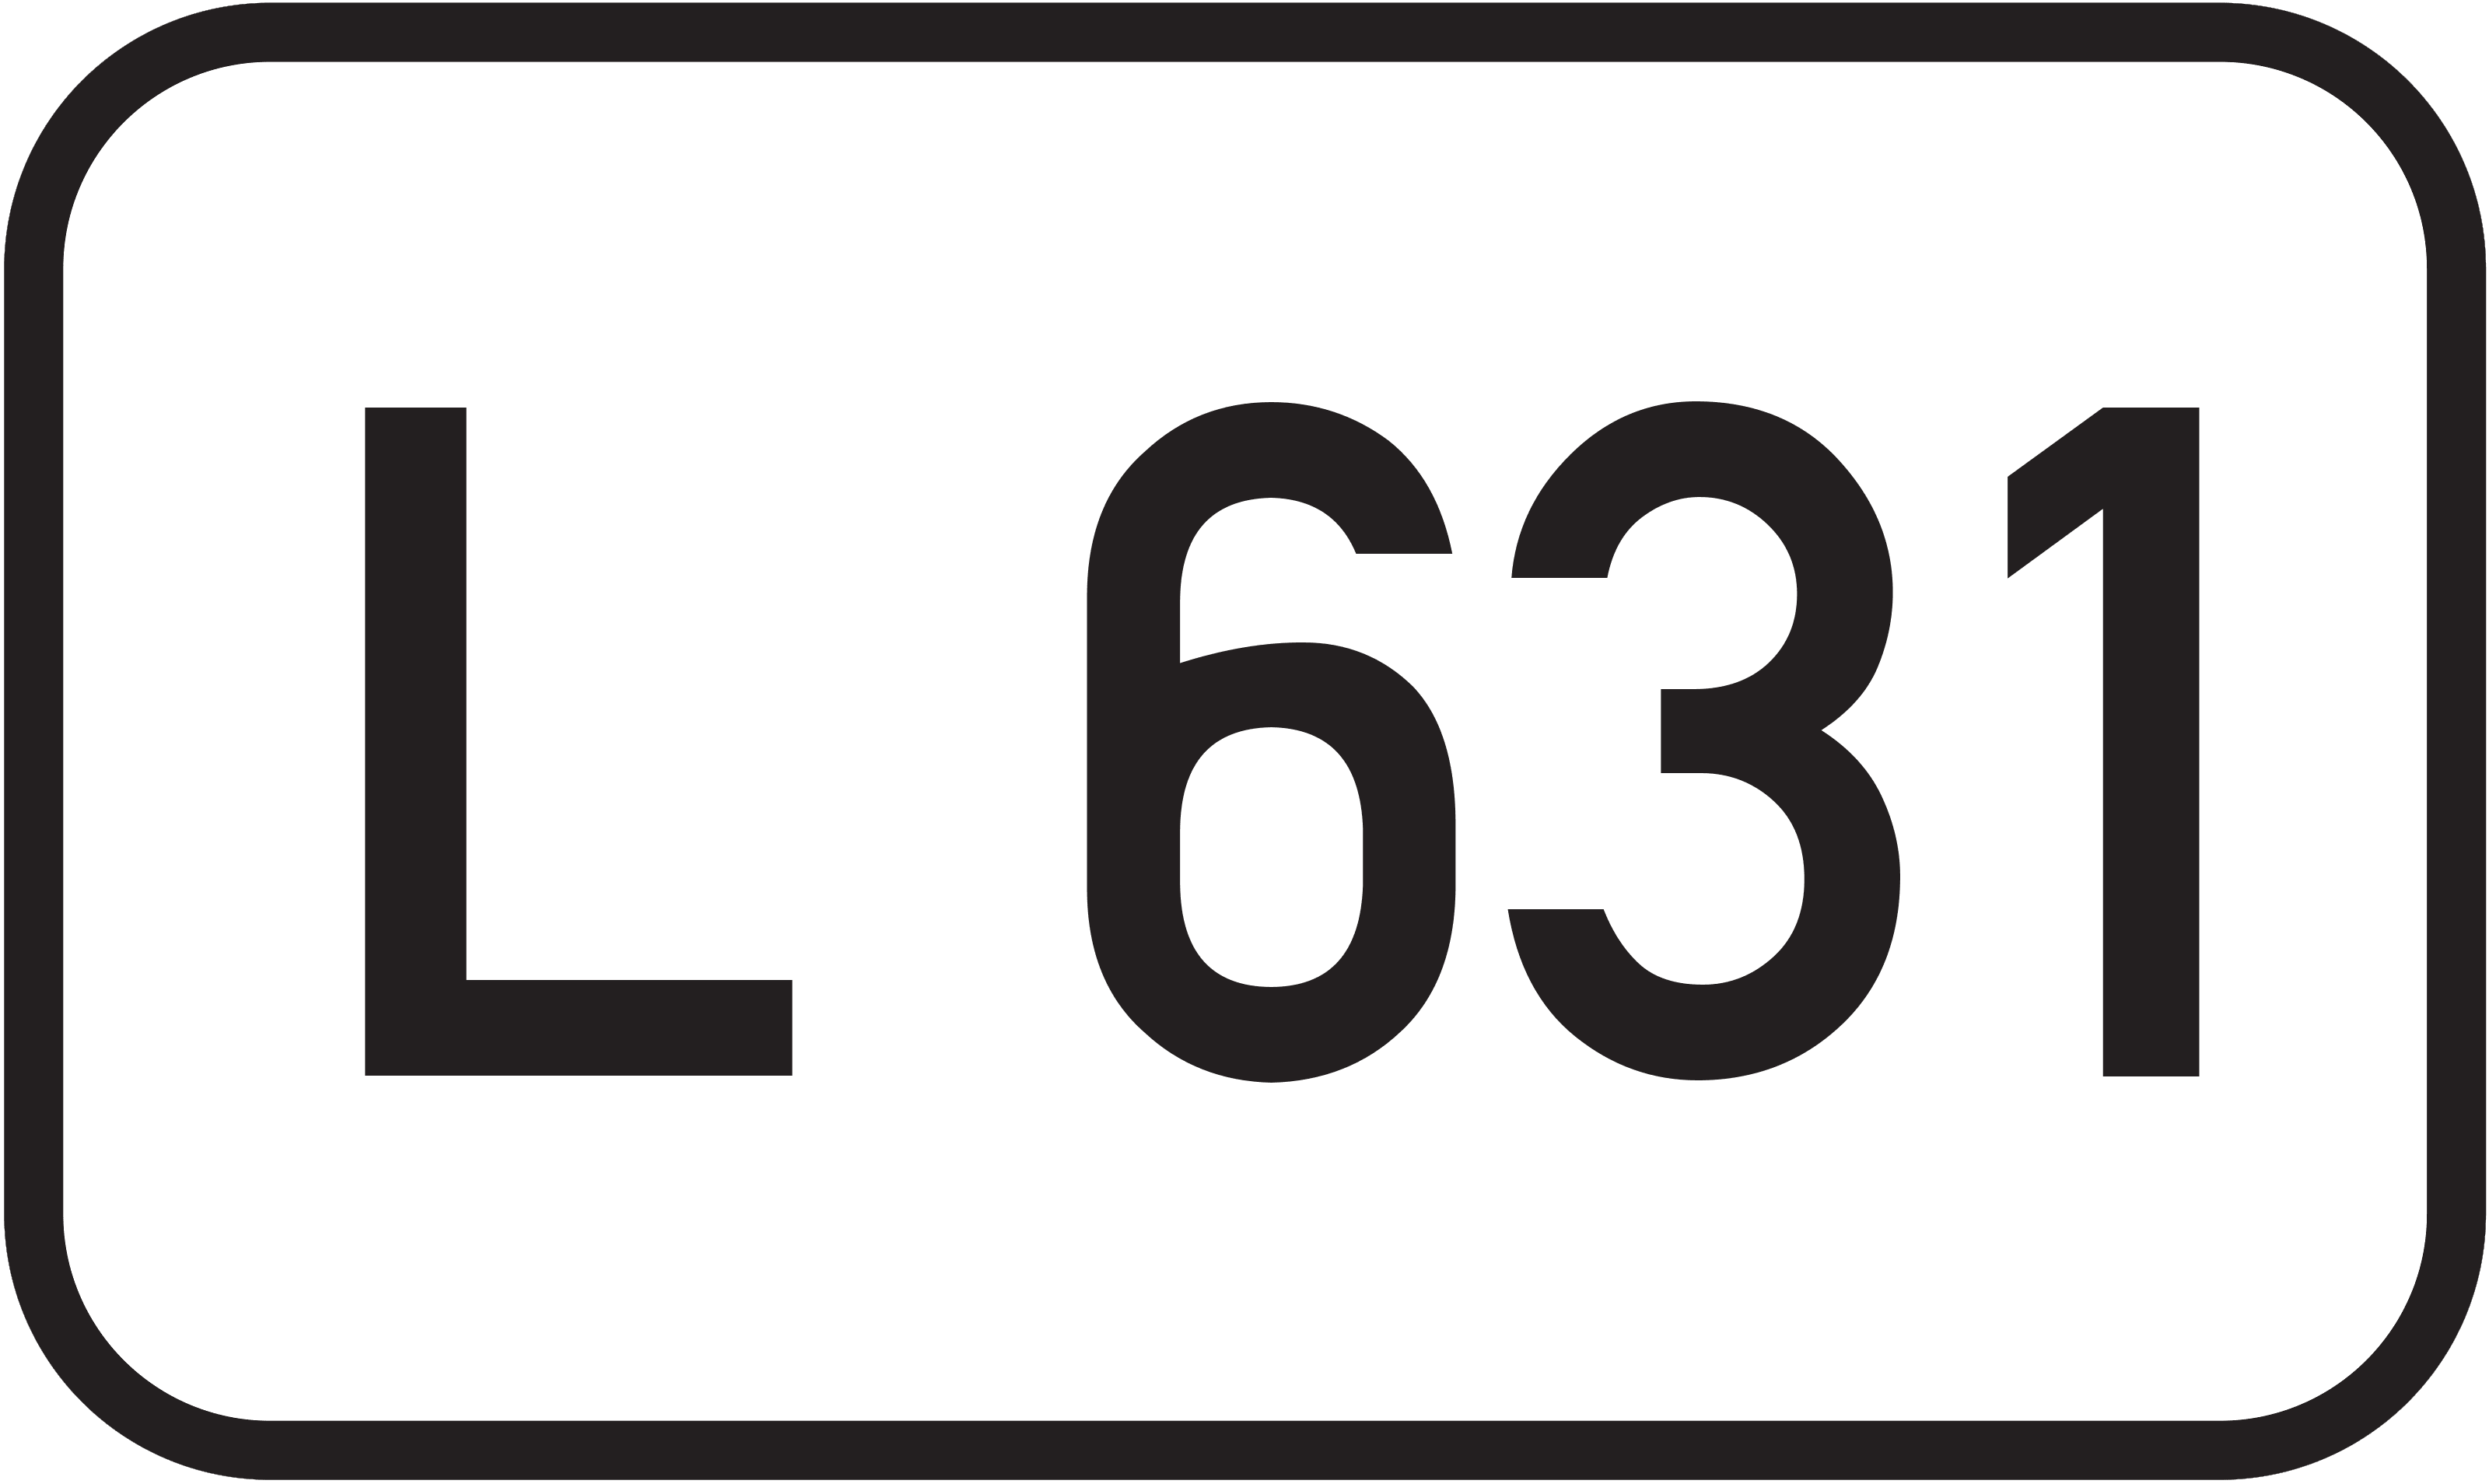 Landesstraße L 631